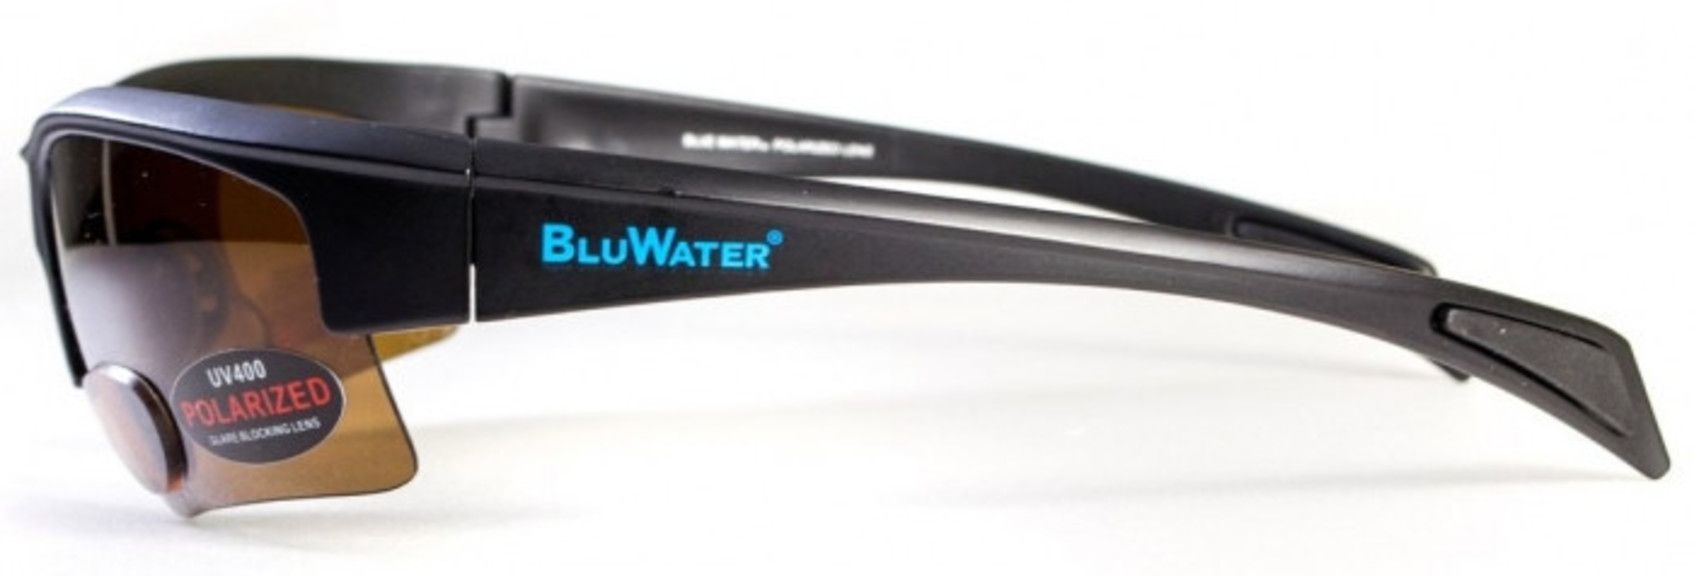 Біфокальні окуляри з поляризацією BluWater Bifocal 2 Brown +2,0 дптр